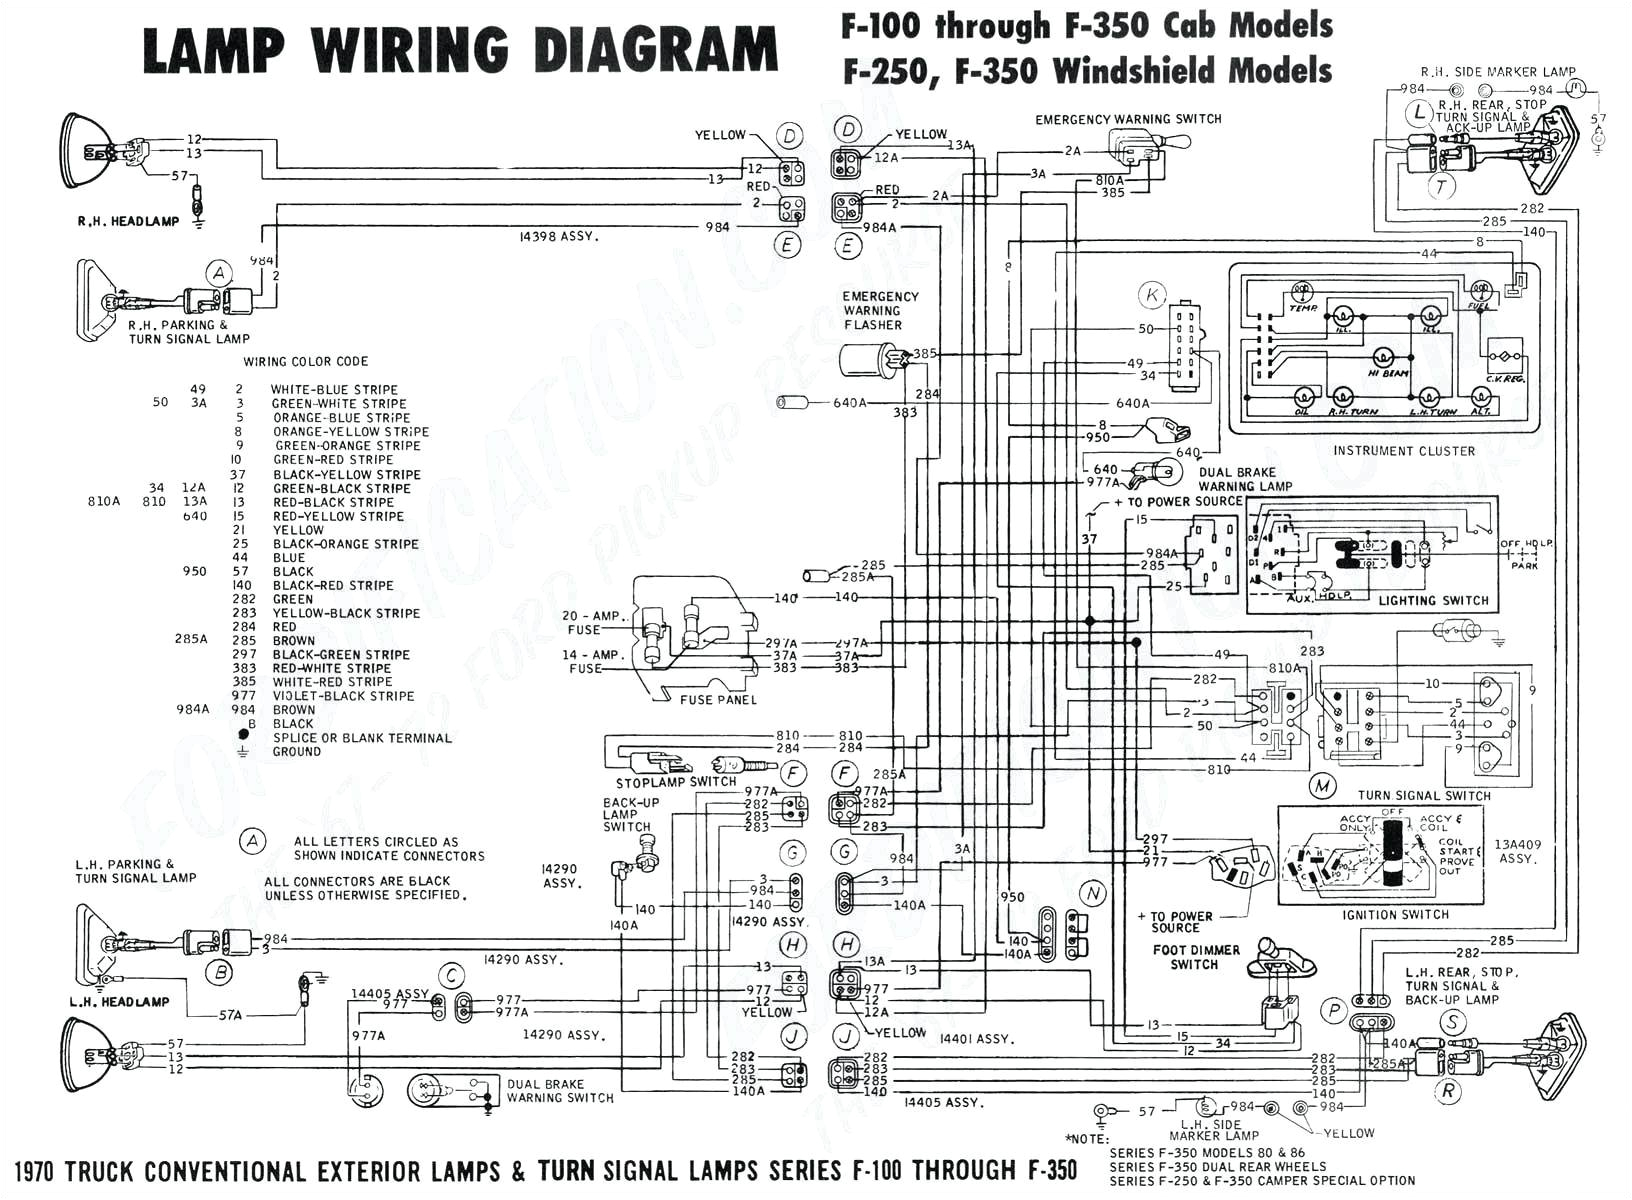 1991 johnson wiring harness diagram schematic wiring diagram 115 wire harness diagram wiring diagram technic 1991